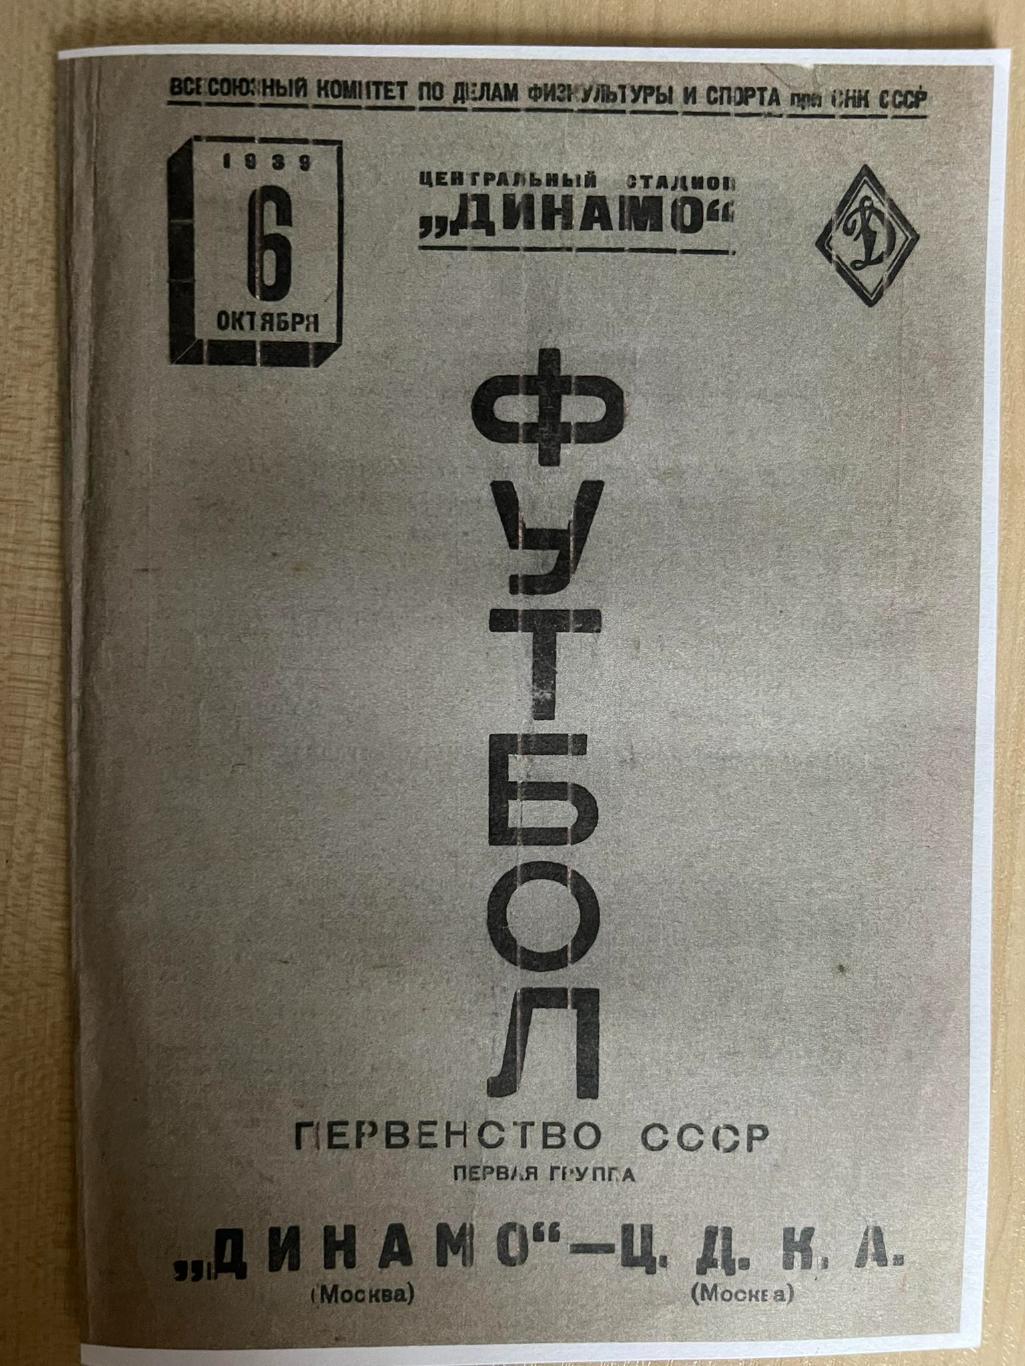 ЦДКА ЦСКА Москва - Динамо Москва 1939 копия